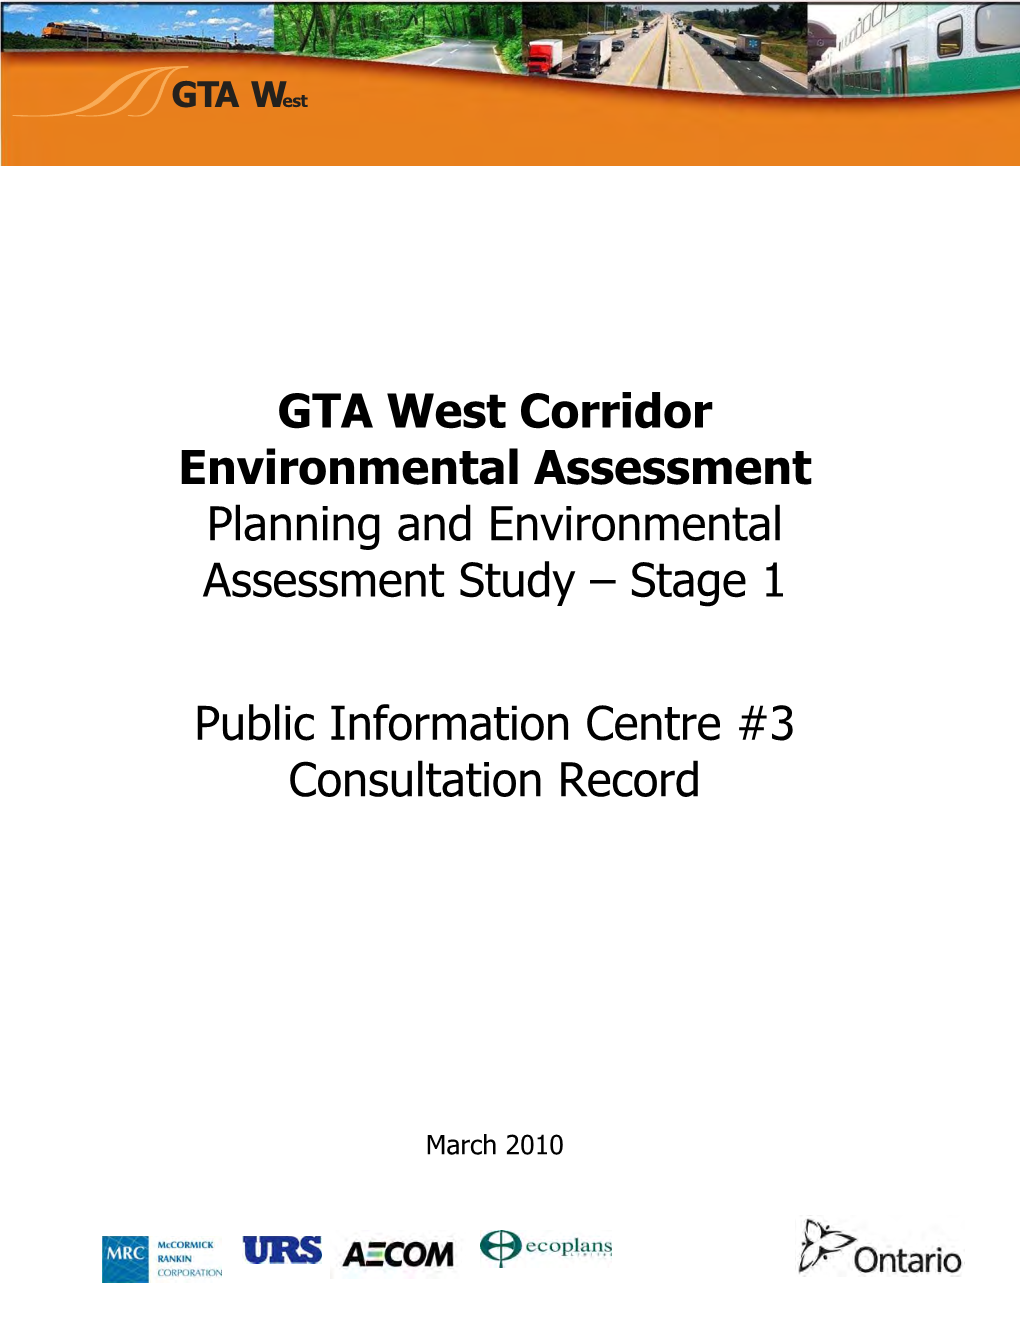 Public Information Centre # 3 Consultation Record